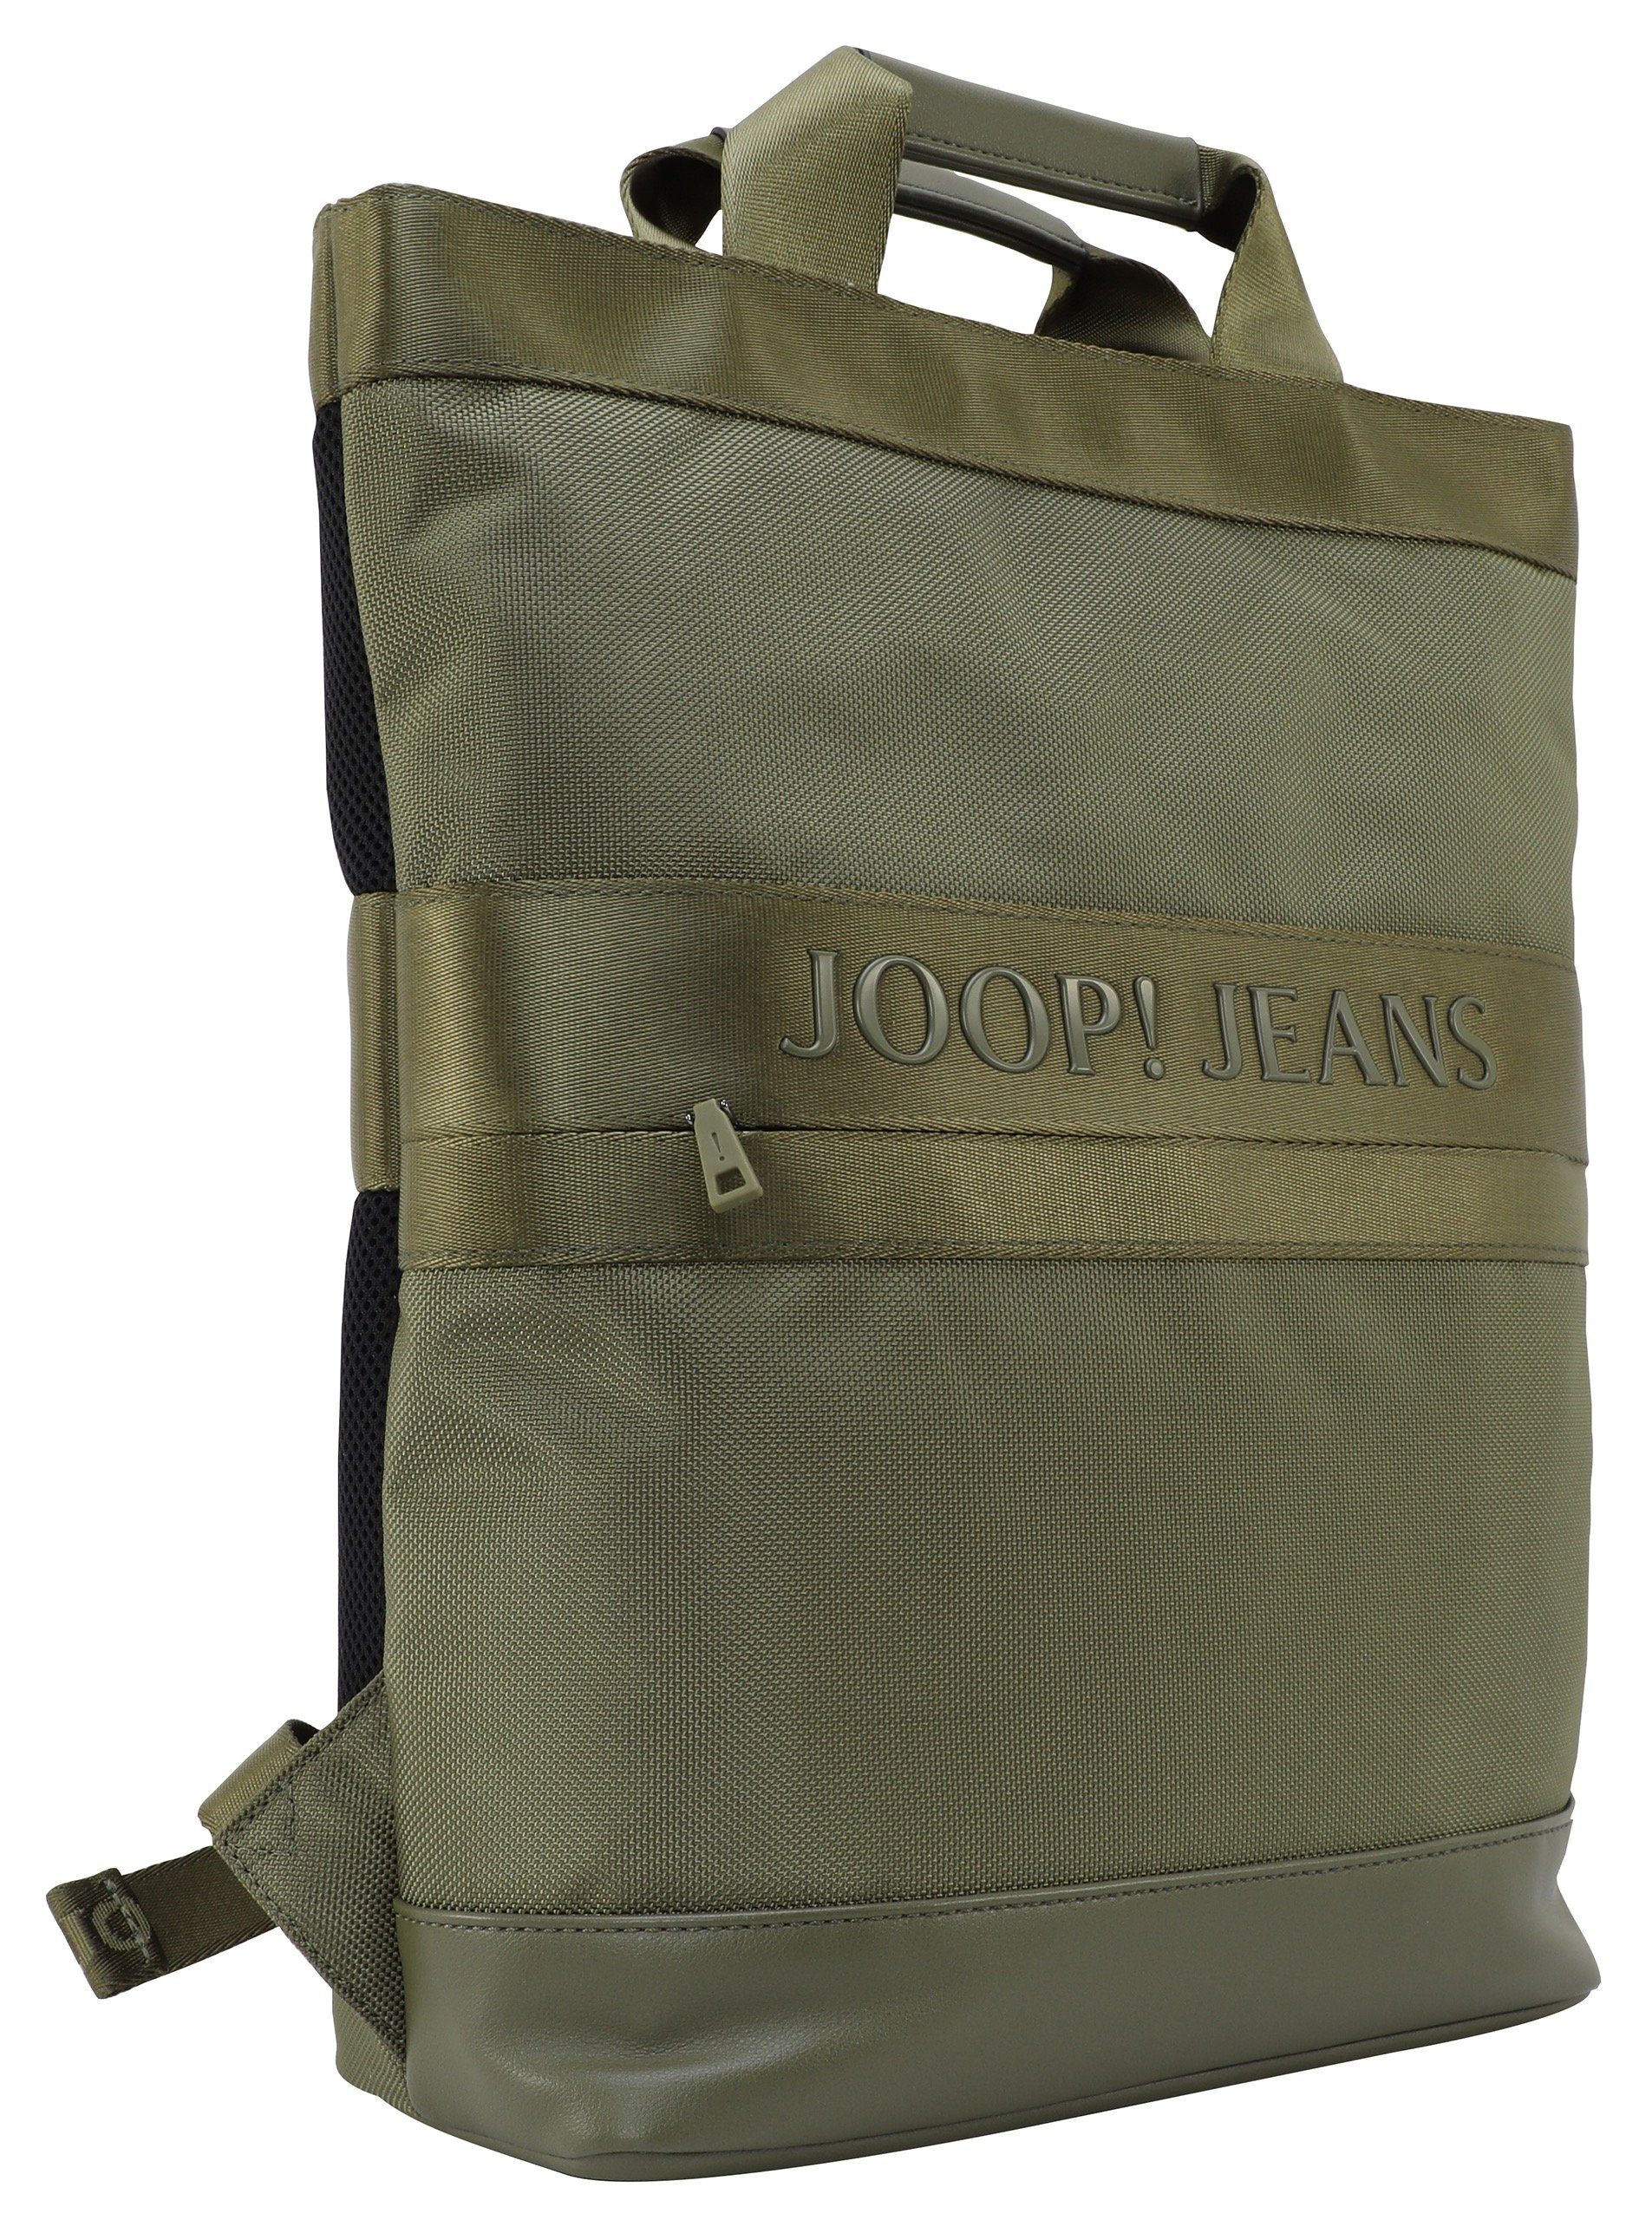 Cityrucksack Verstellbarer svz, mit falk Joop backpack Jeans Schultertragegurt modica Reißverschluss-Vortasche,